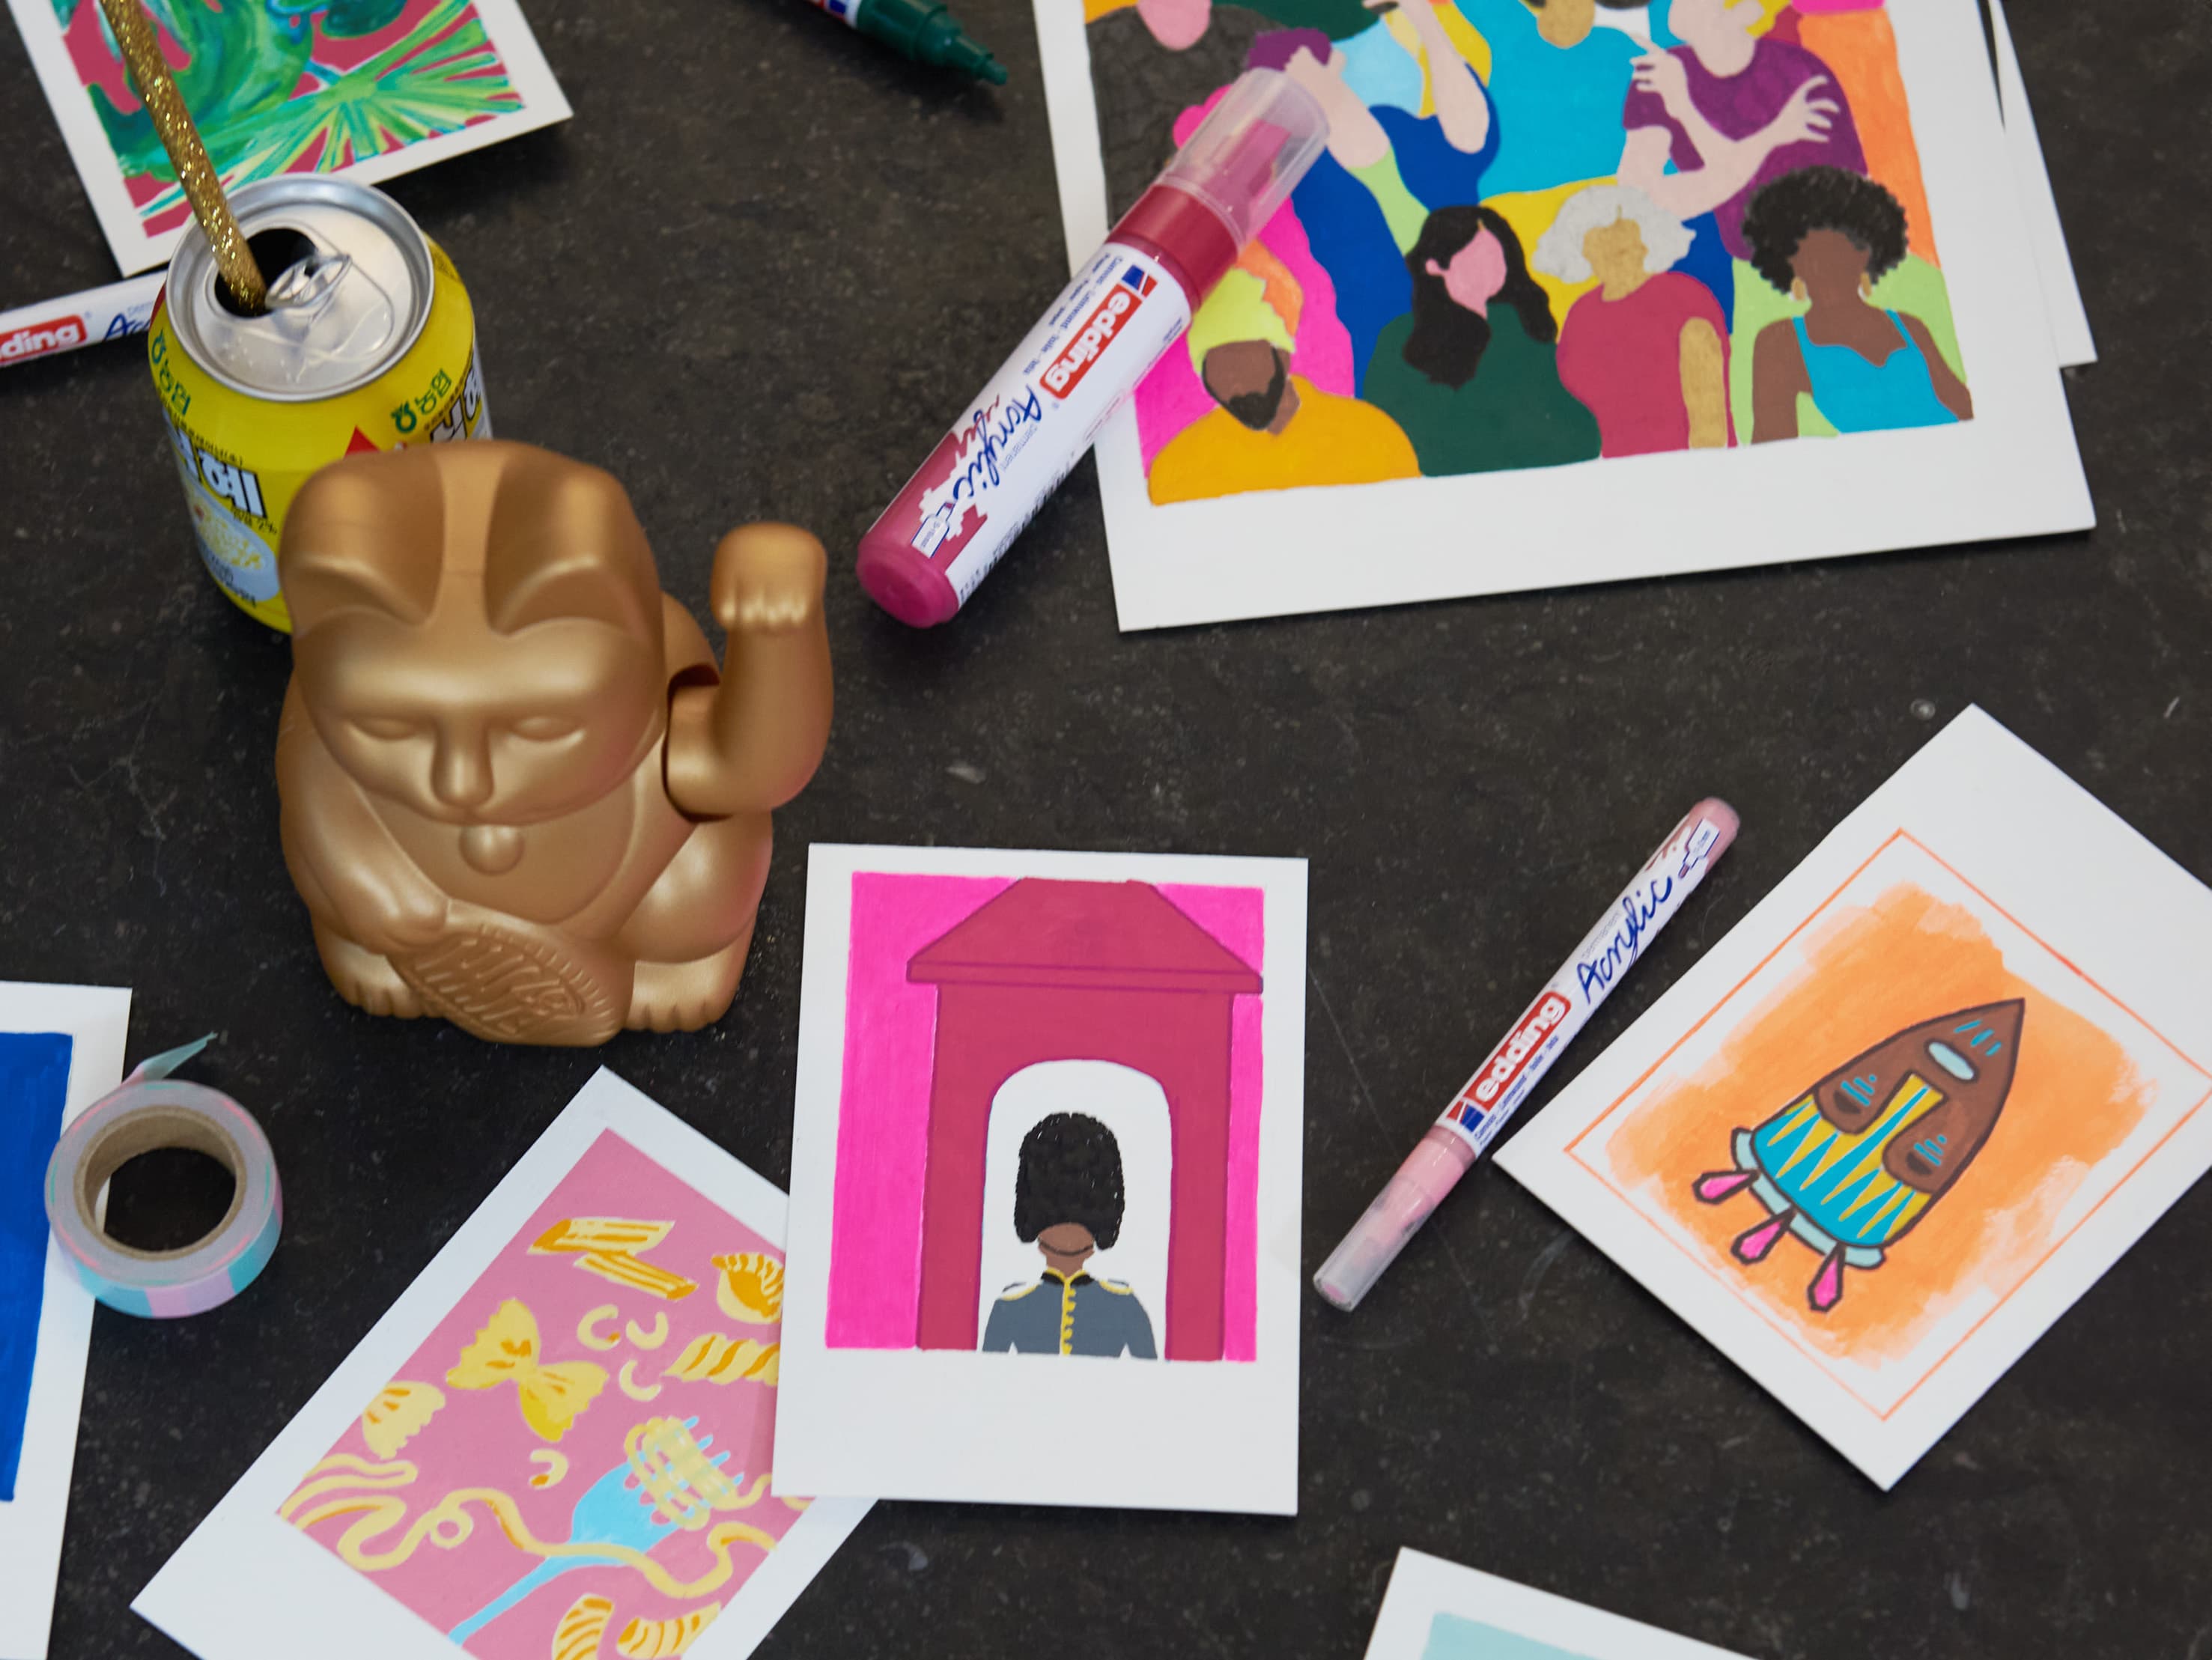 Ein lebendiger und farbenfroher Künstlerarbeitsplatz mit einer Auswahl an Illustrationen zu unterschiedlichen Themen, flankiert von Markern, einem edding 5000 Acrylmarker breit und einer skurrilen Goldfigur.